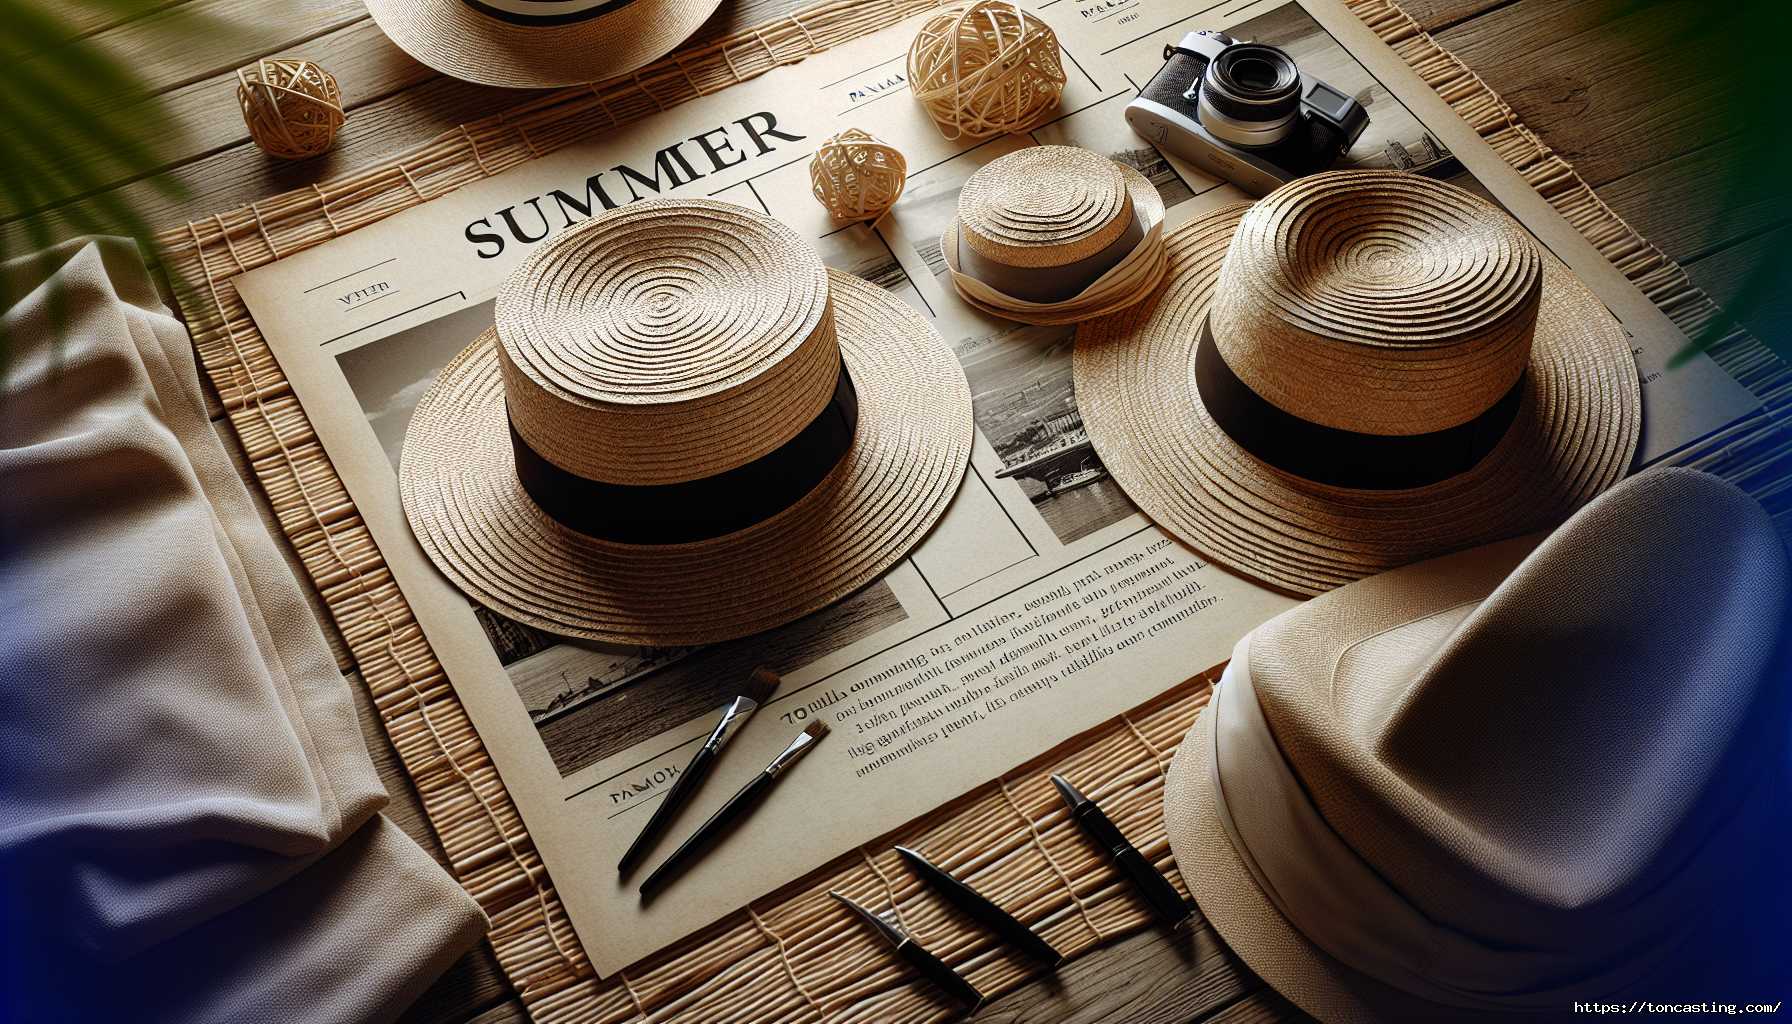 Chapeaux en paille et accessoires d'été sur une table en bois.